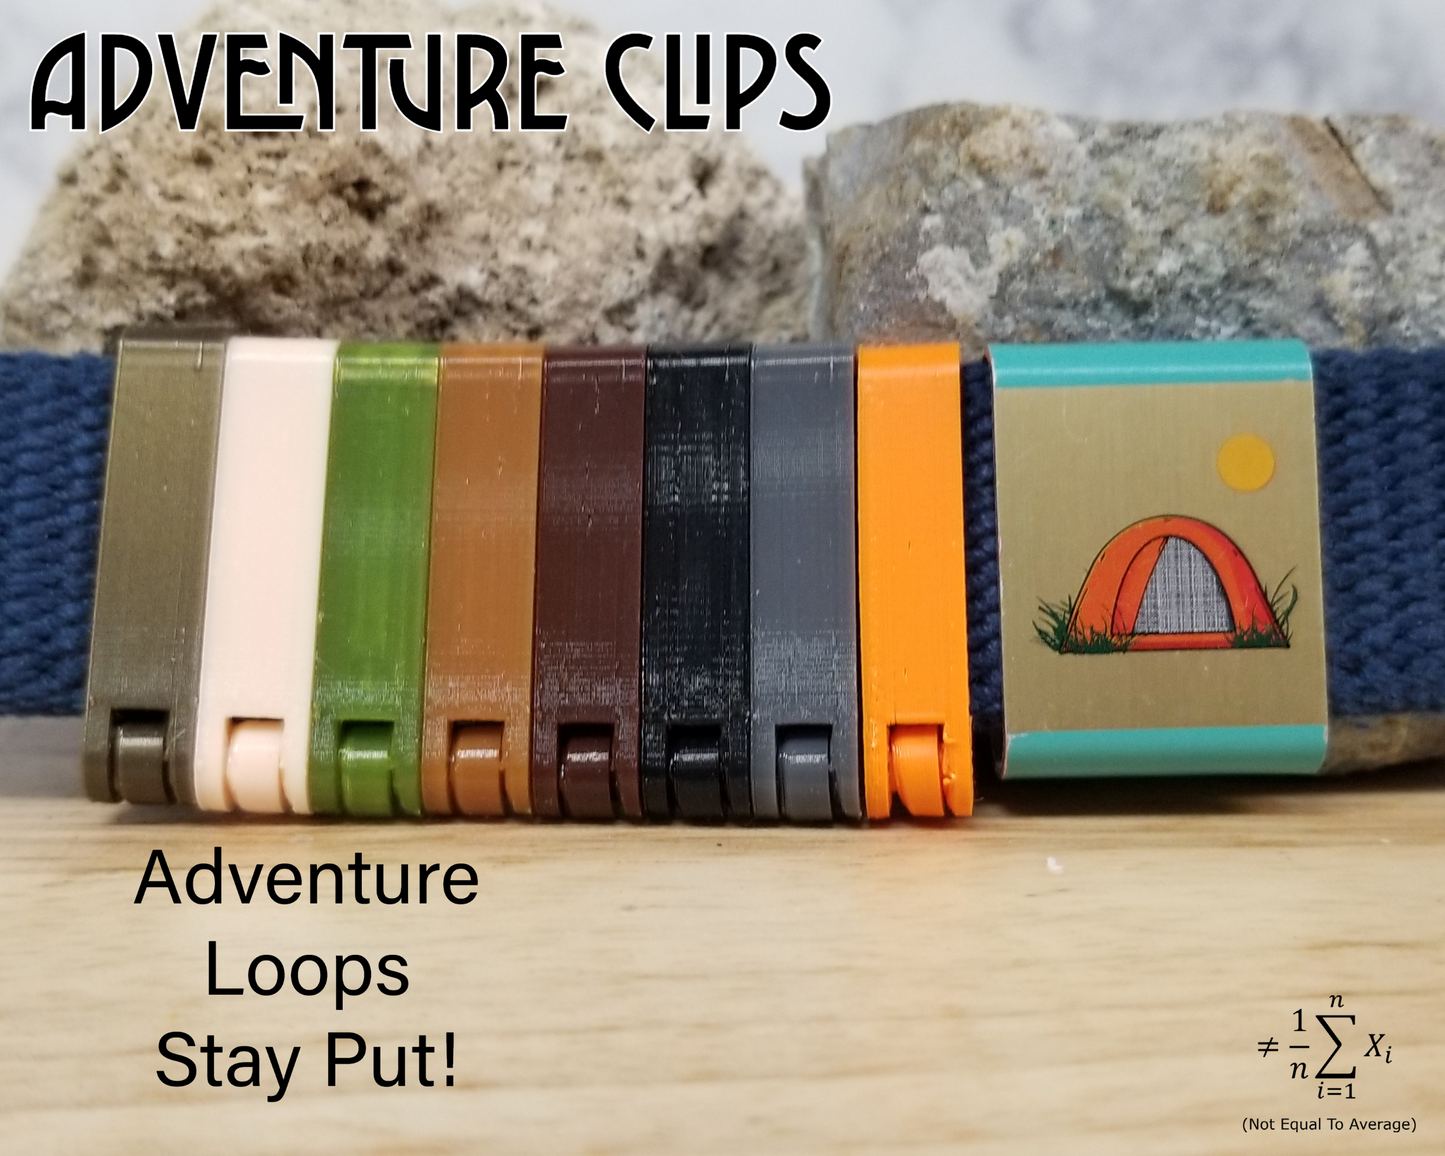 Adventure Clip